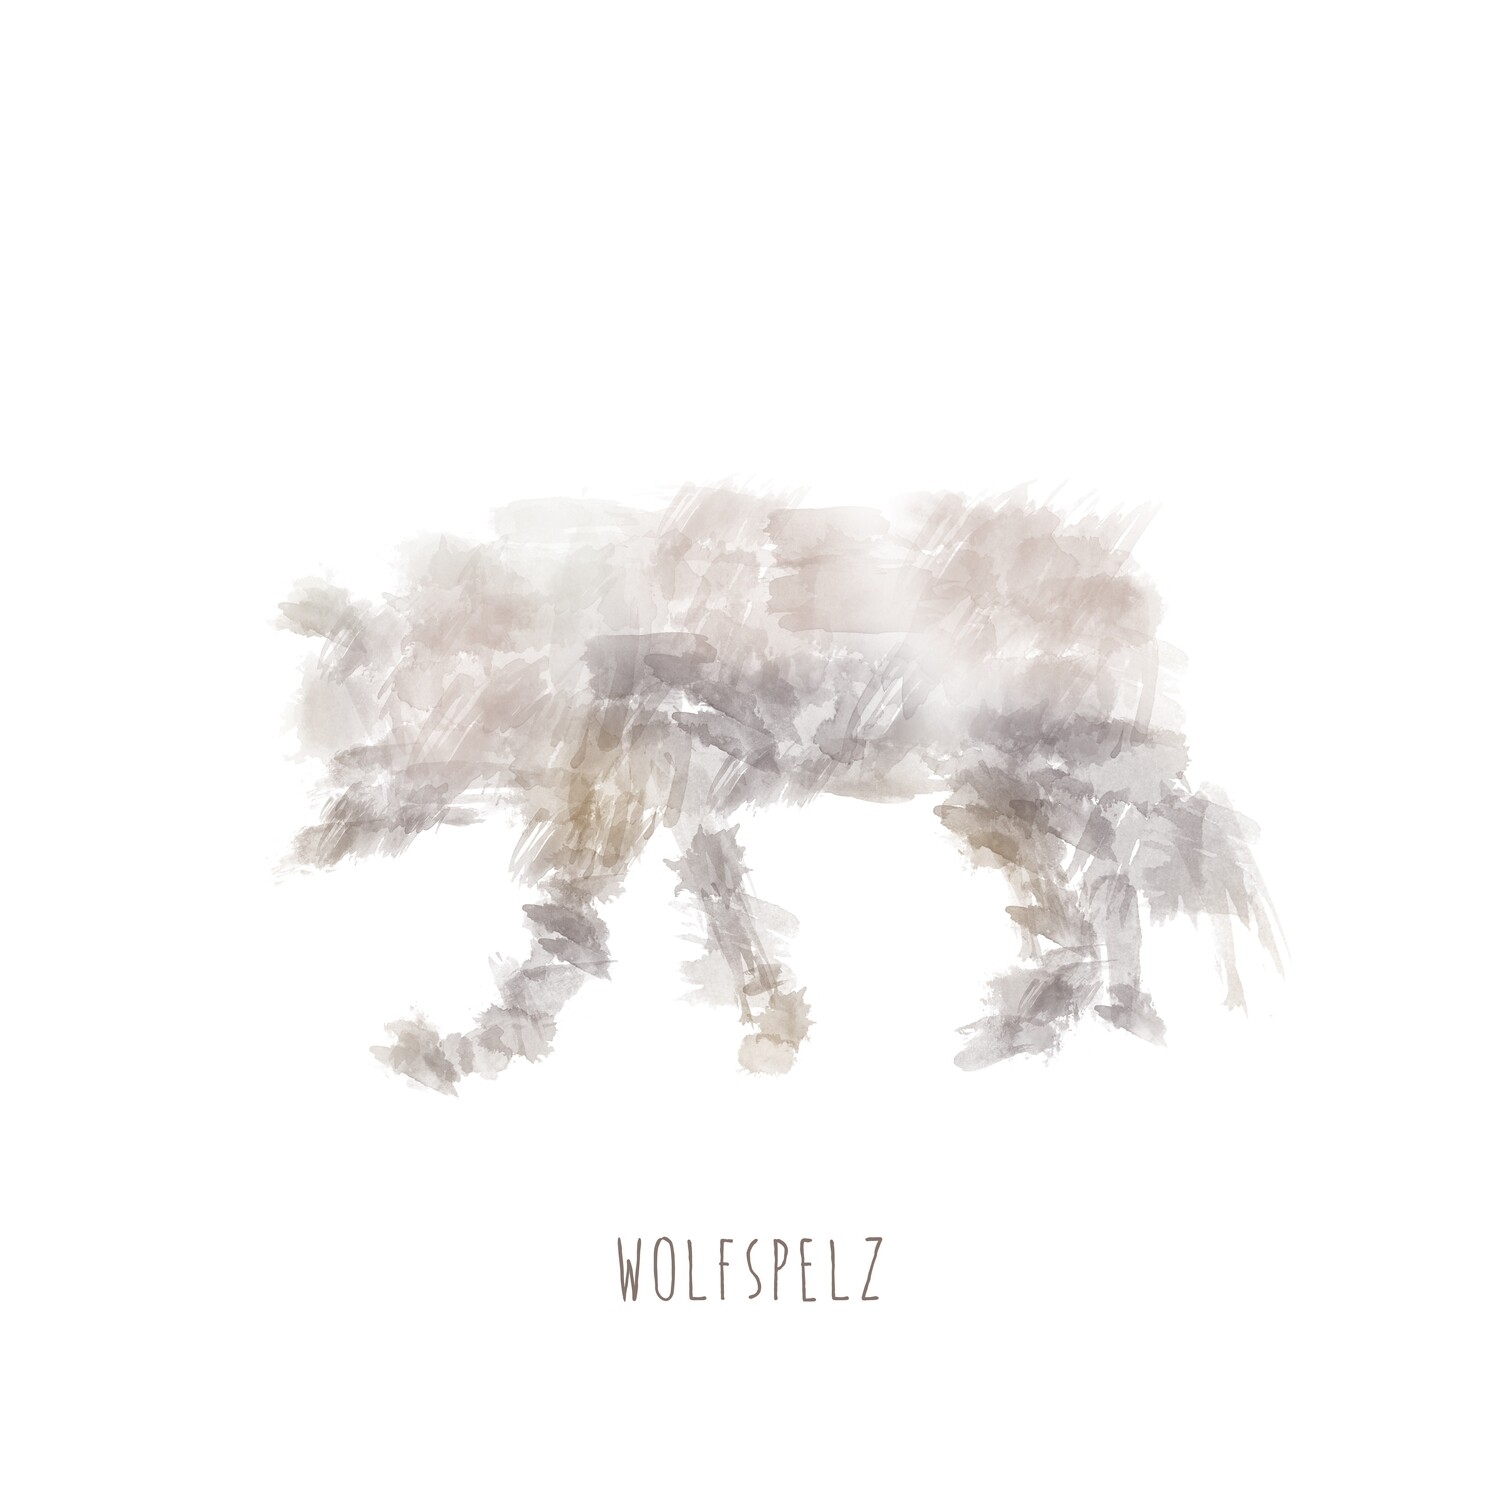 CD Wolfspelz